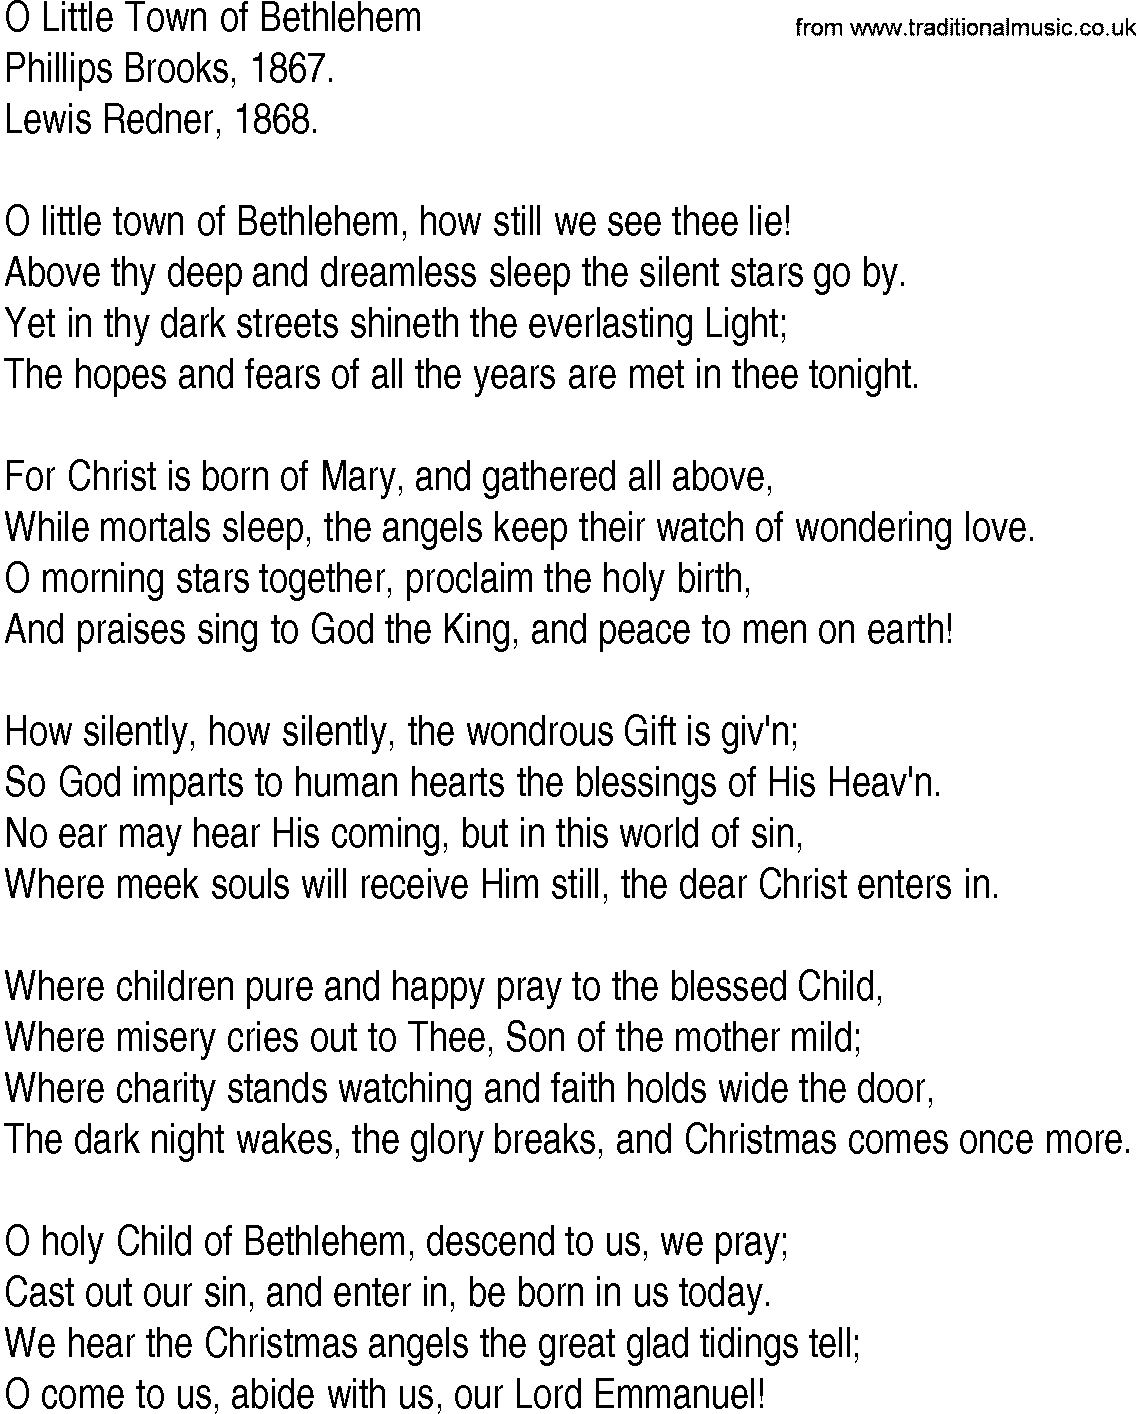 Hymn and Gospel Song Lyrics for O Little Town of Bethlehem by Phillips ...